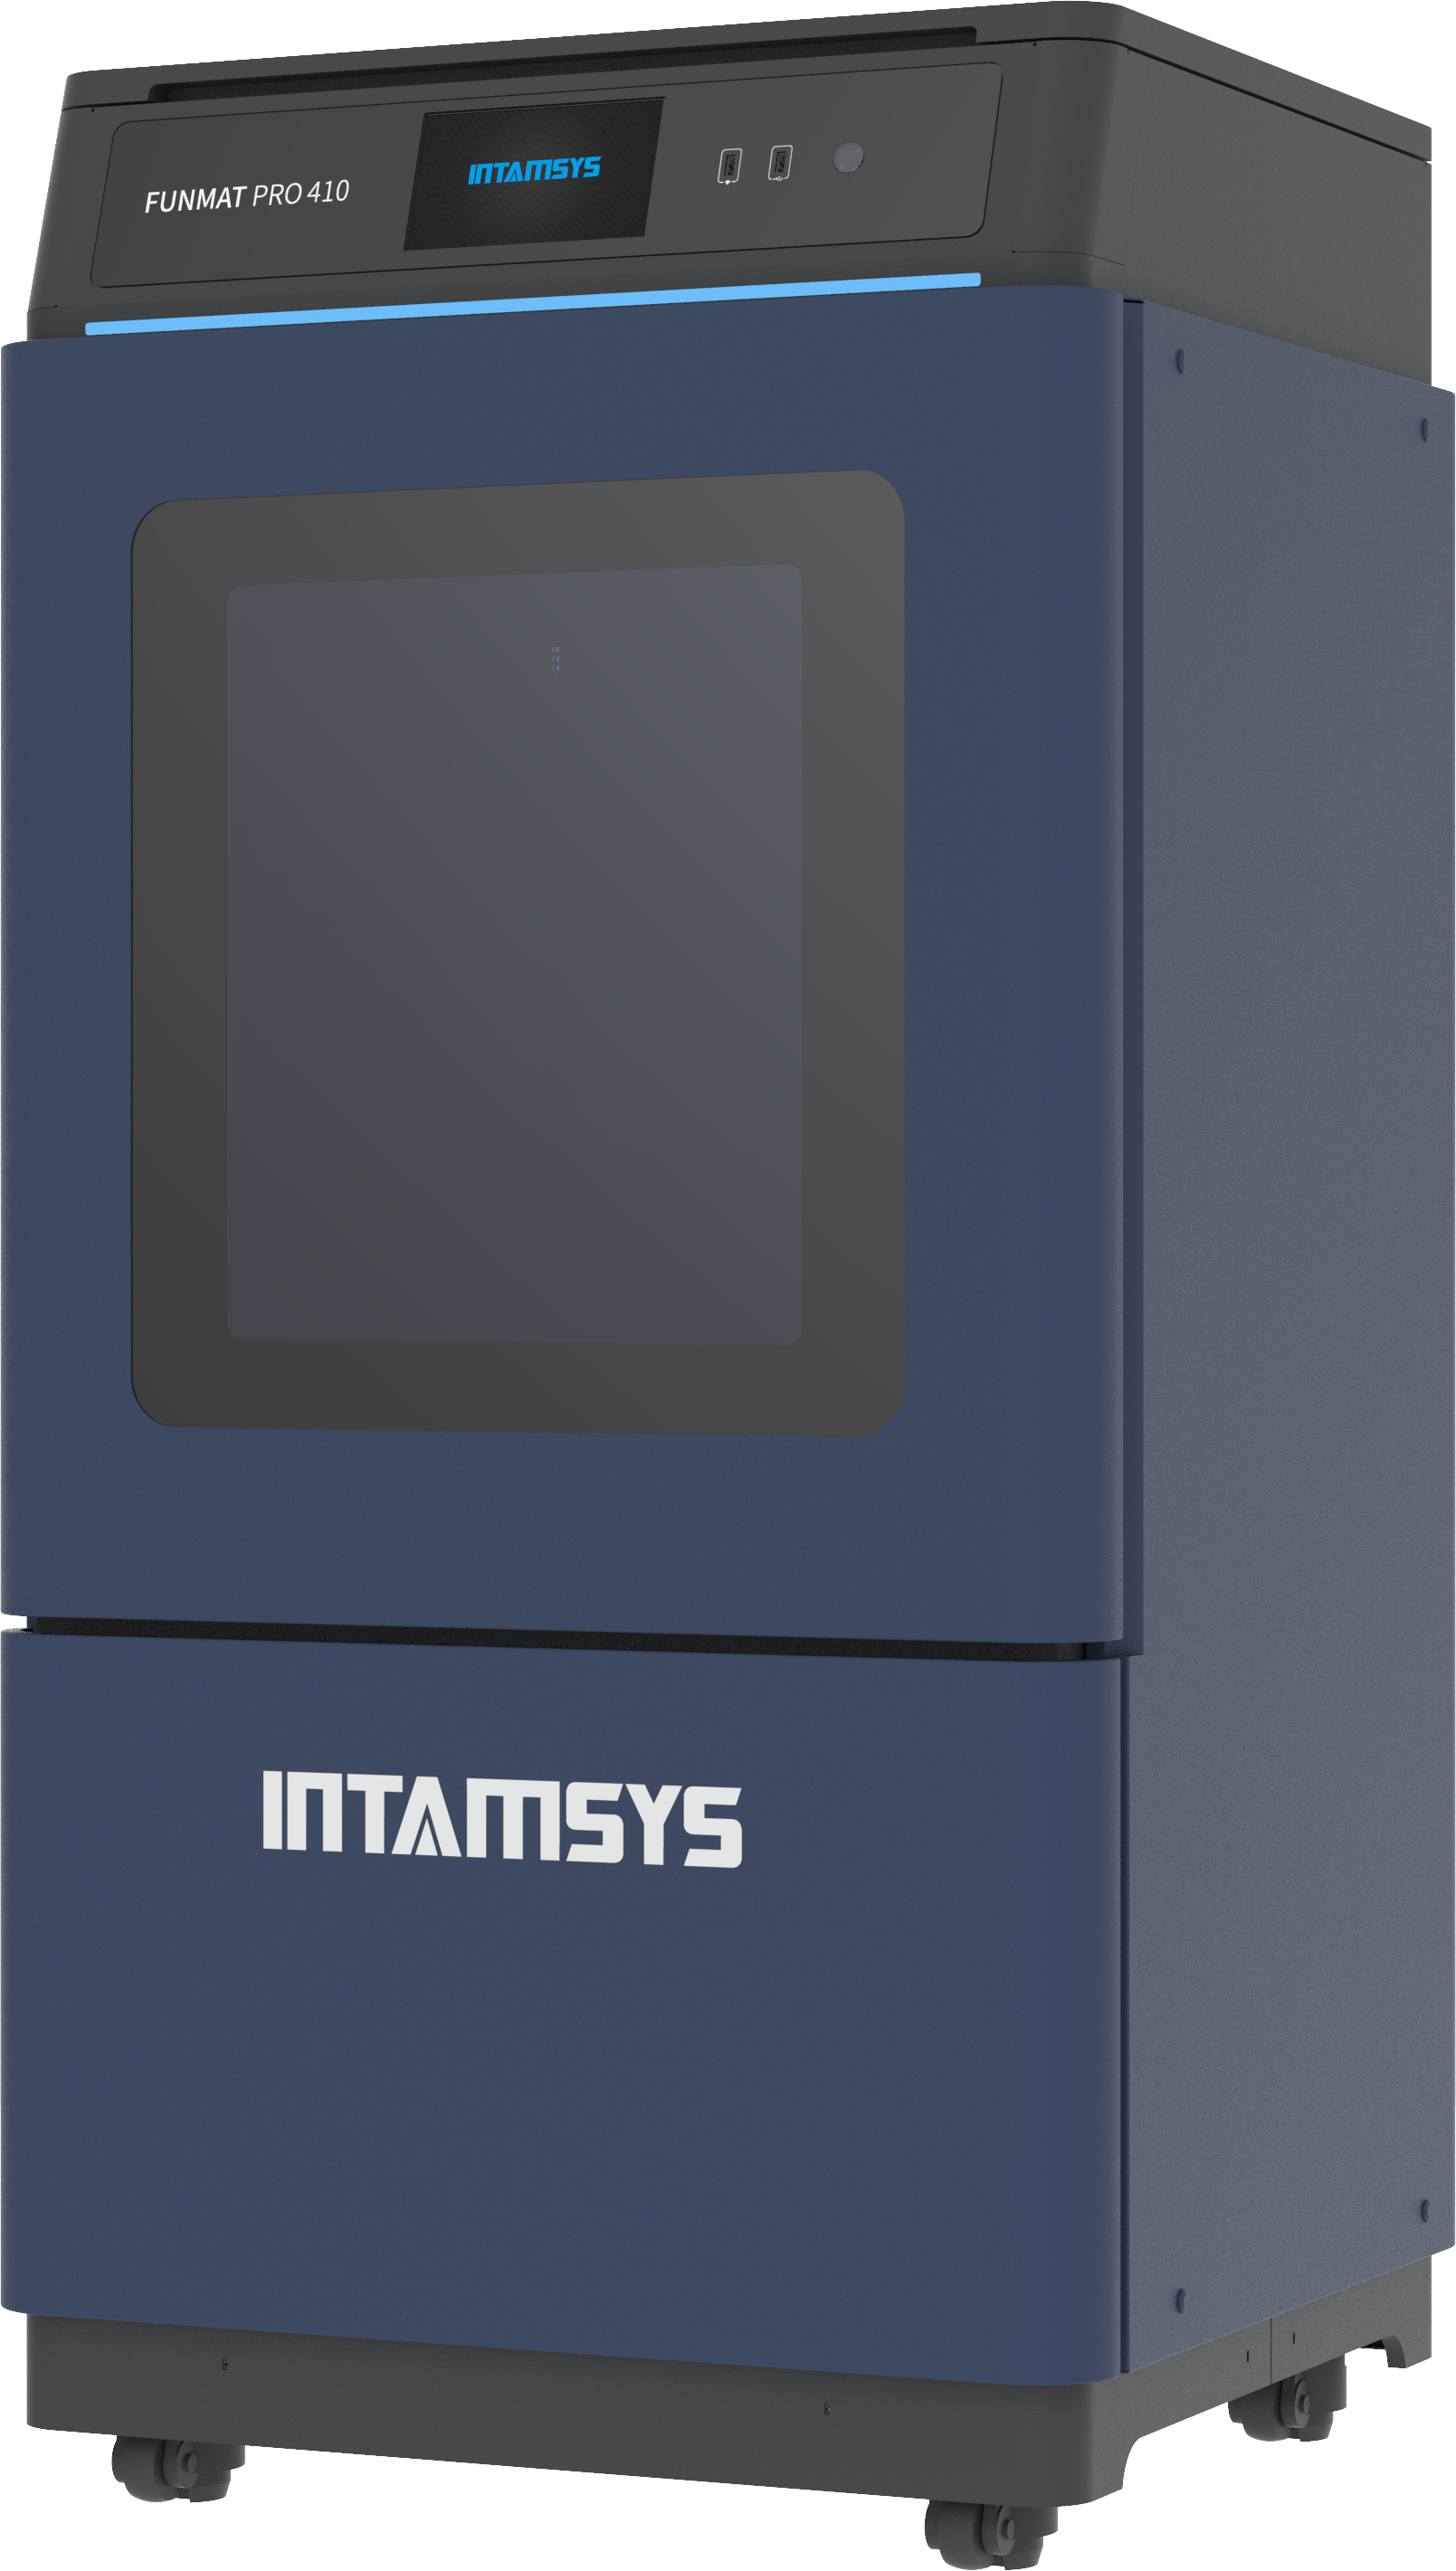 인탐시스 펀맷 프로 410 Intamsys Funmat Pro 410 덕유항공